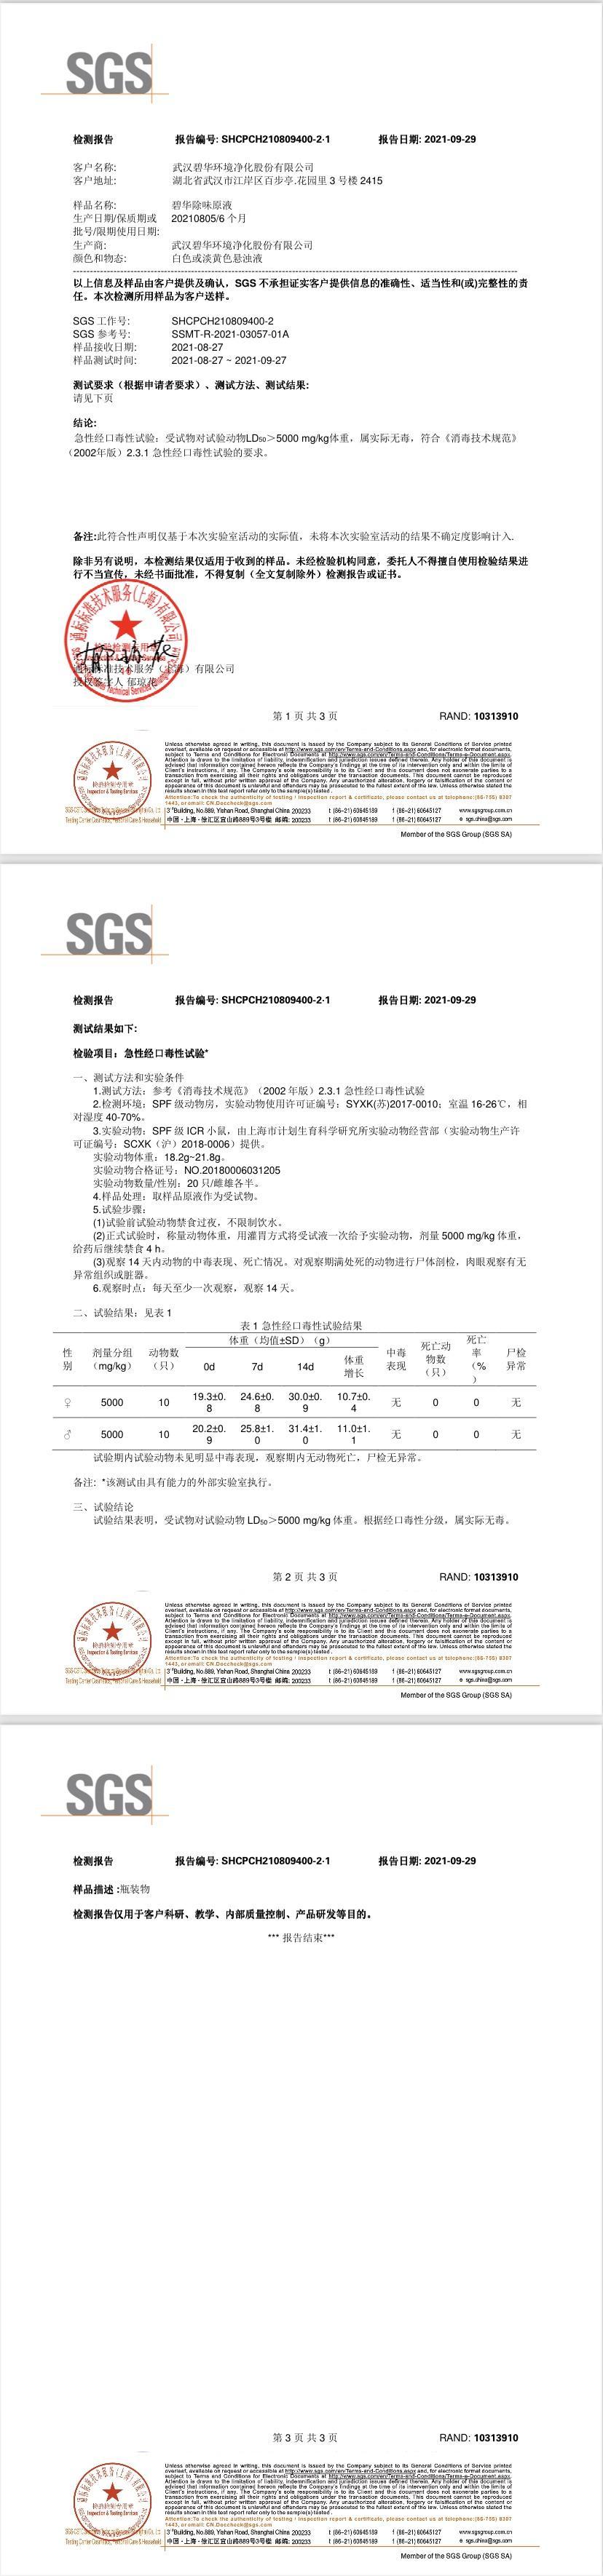 郑州SGS除味无毒检测报告